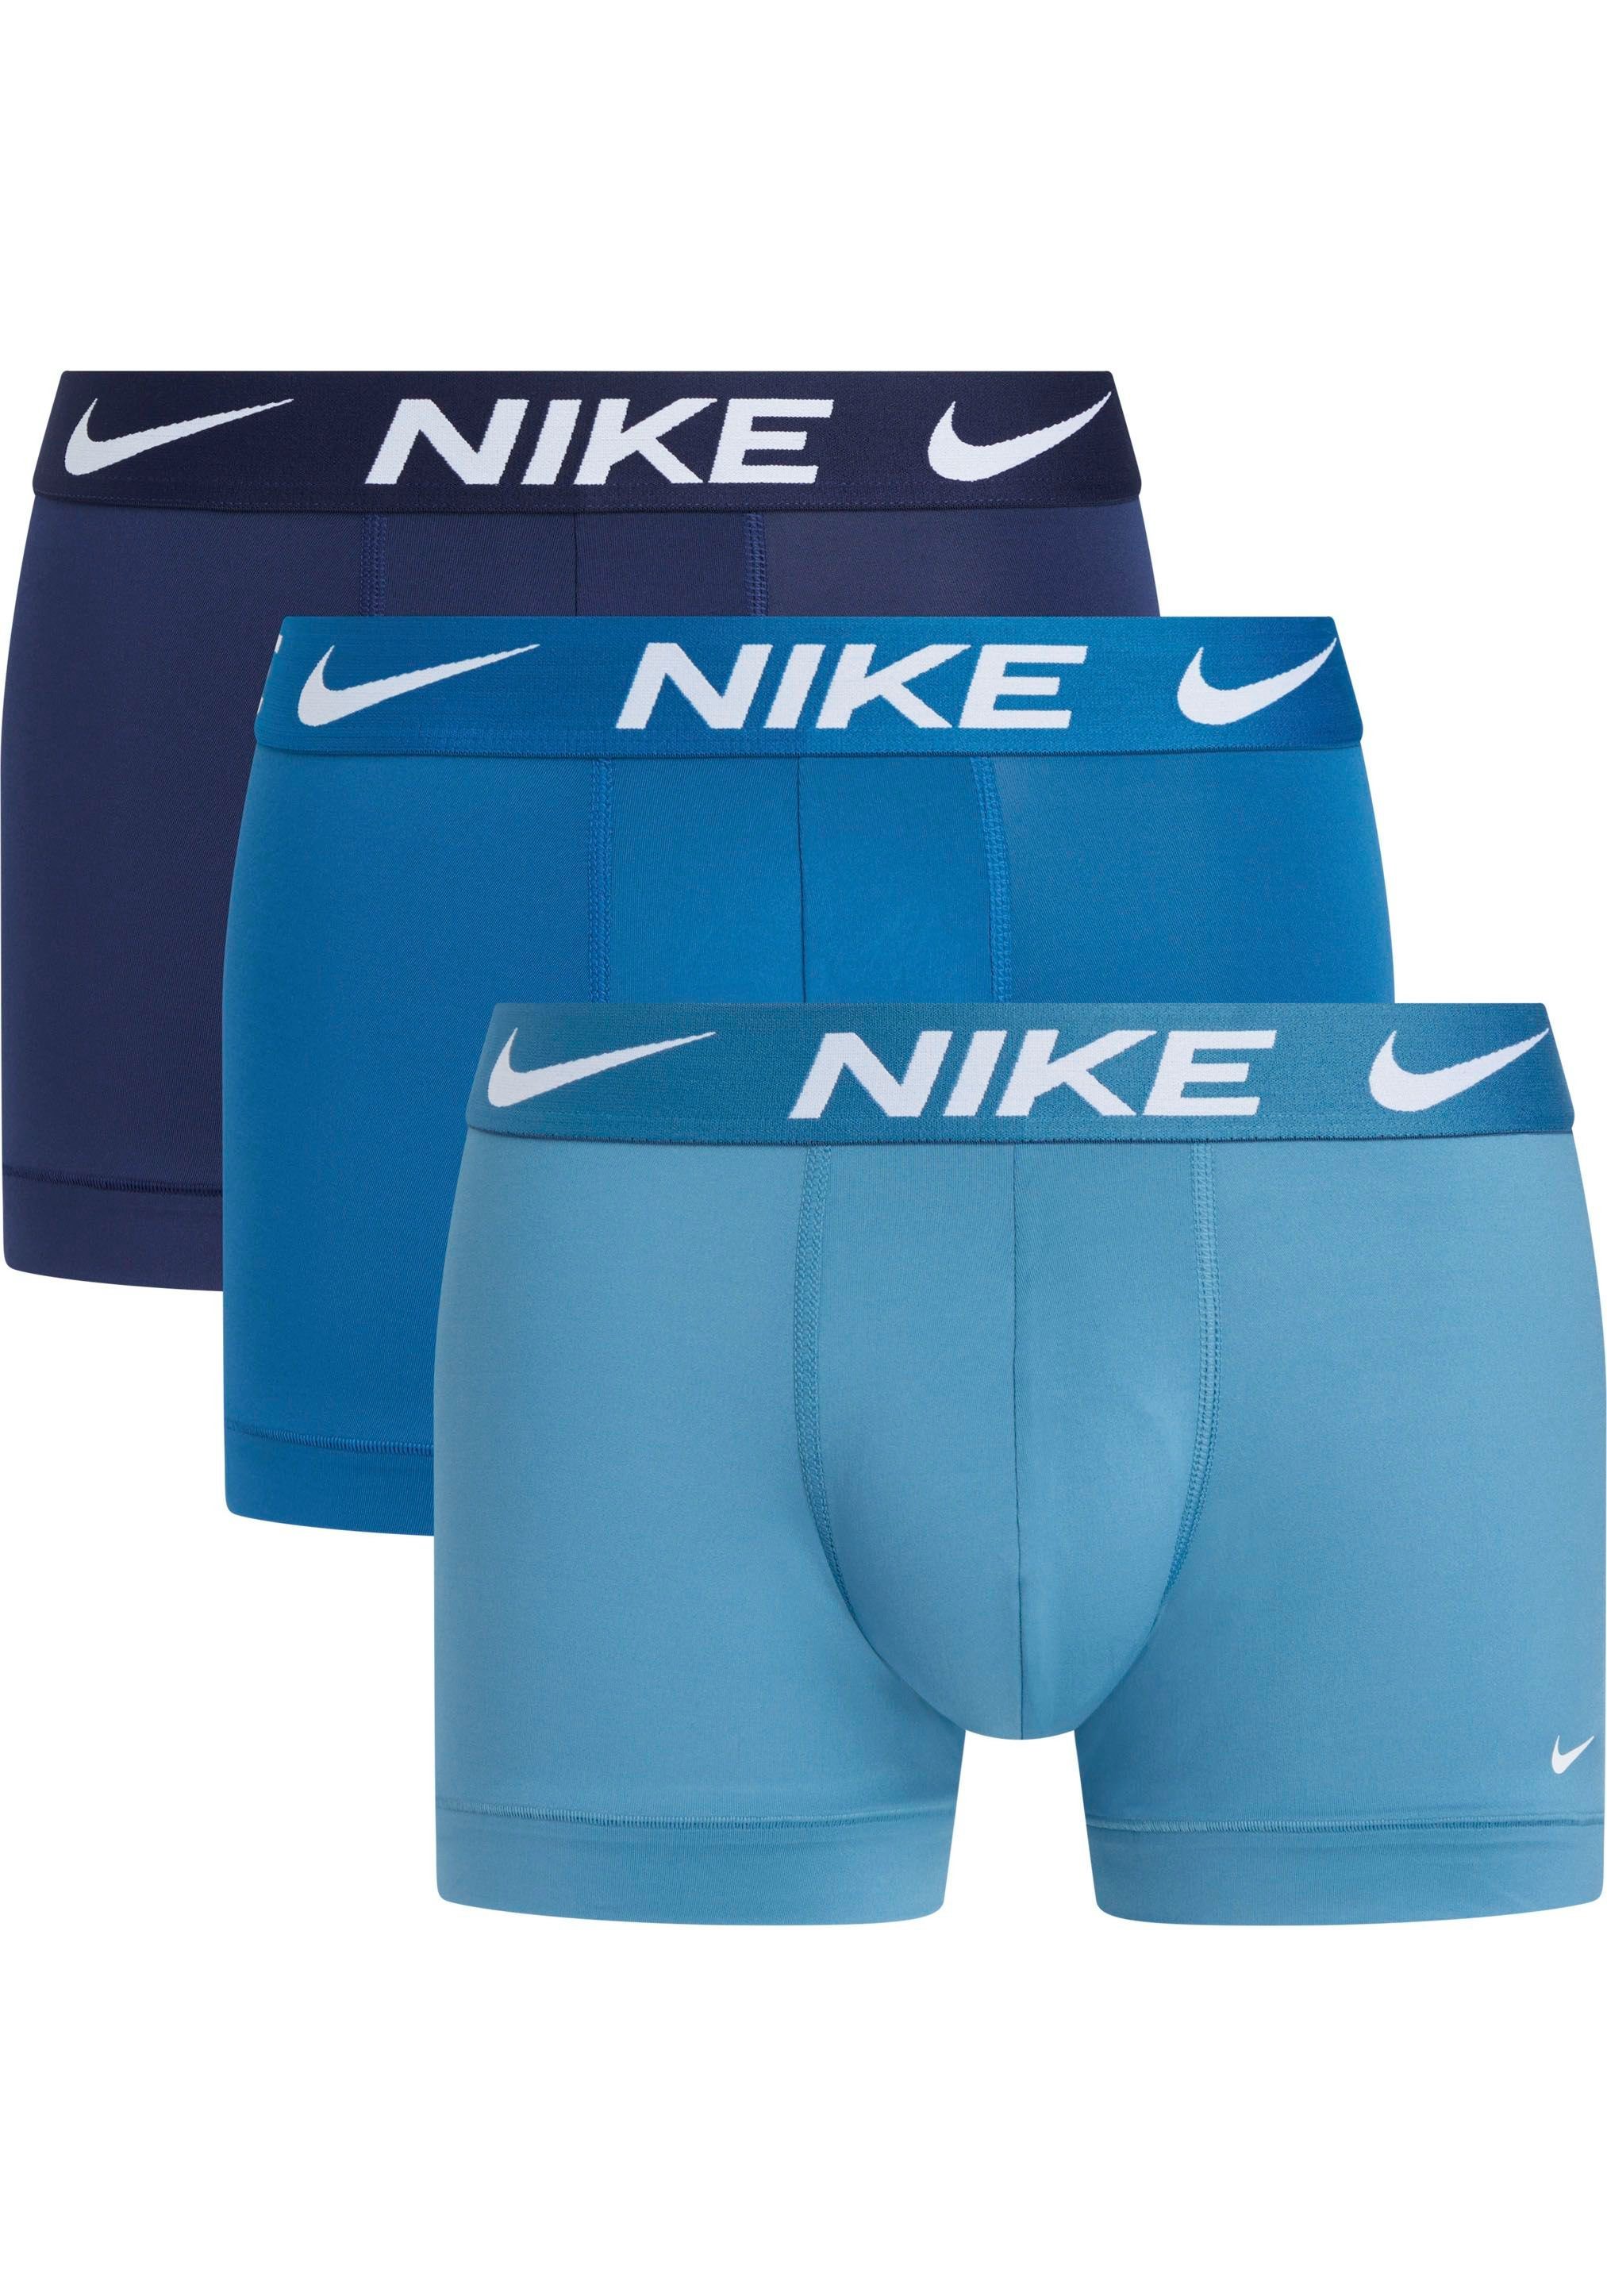 NIKE Underwear Trunk TRUNK 3PK (Packung, 3er-Pack) mit NIKE Logo-Elastikbund (3 Stück) NOISE_AQUA/INDSTRIAL_BL/MDNGHT_BLUE | Boxer anliegend